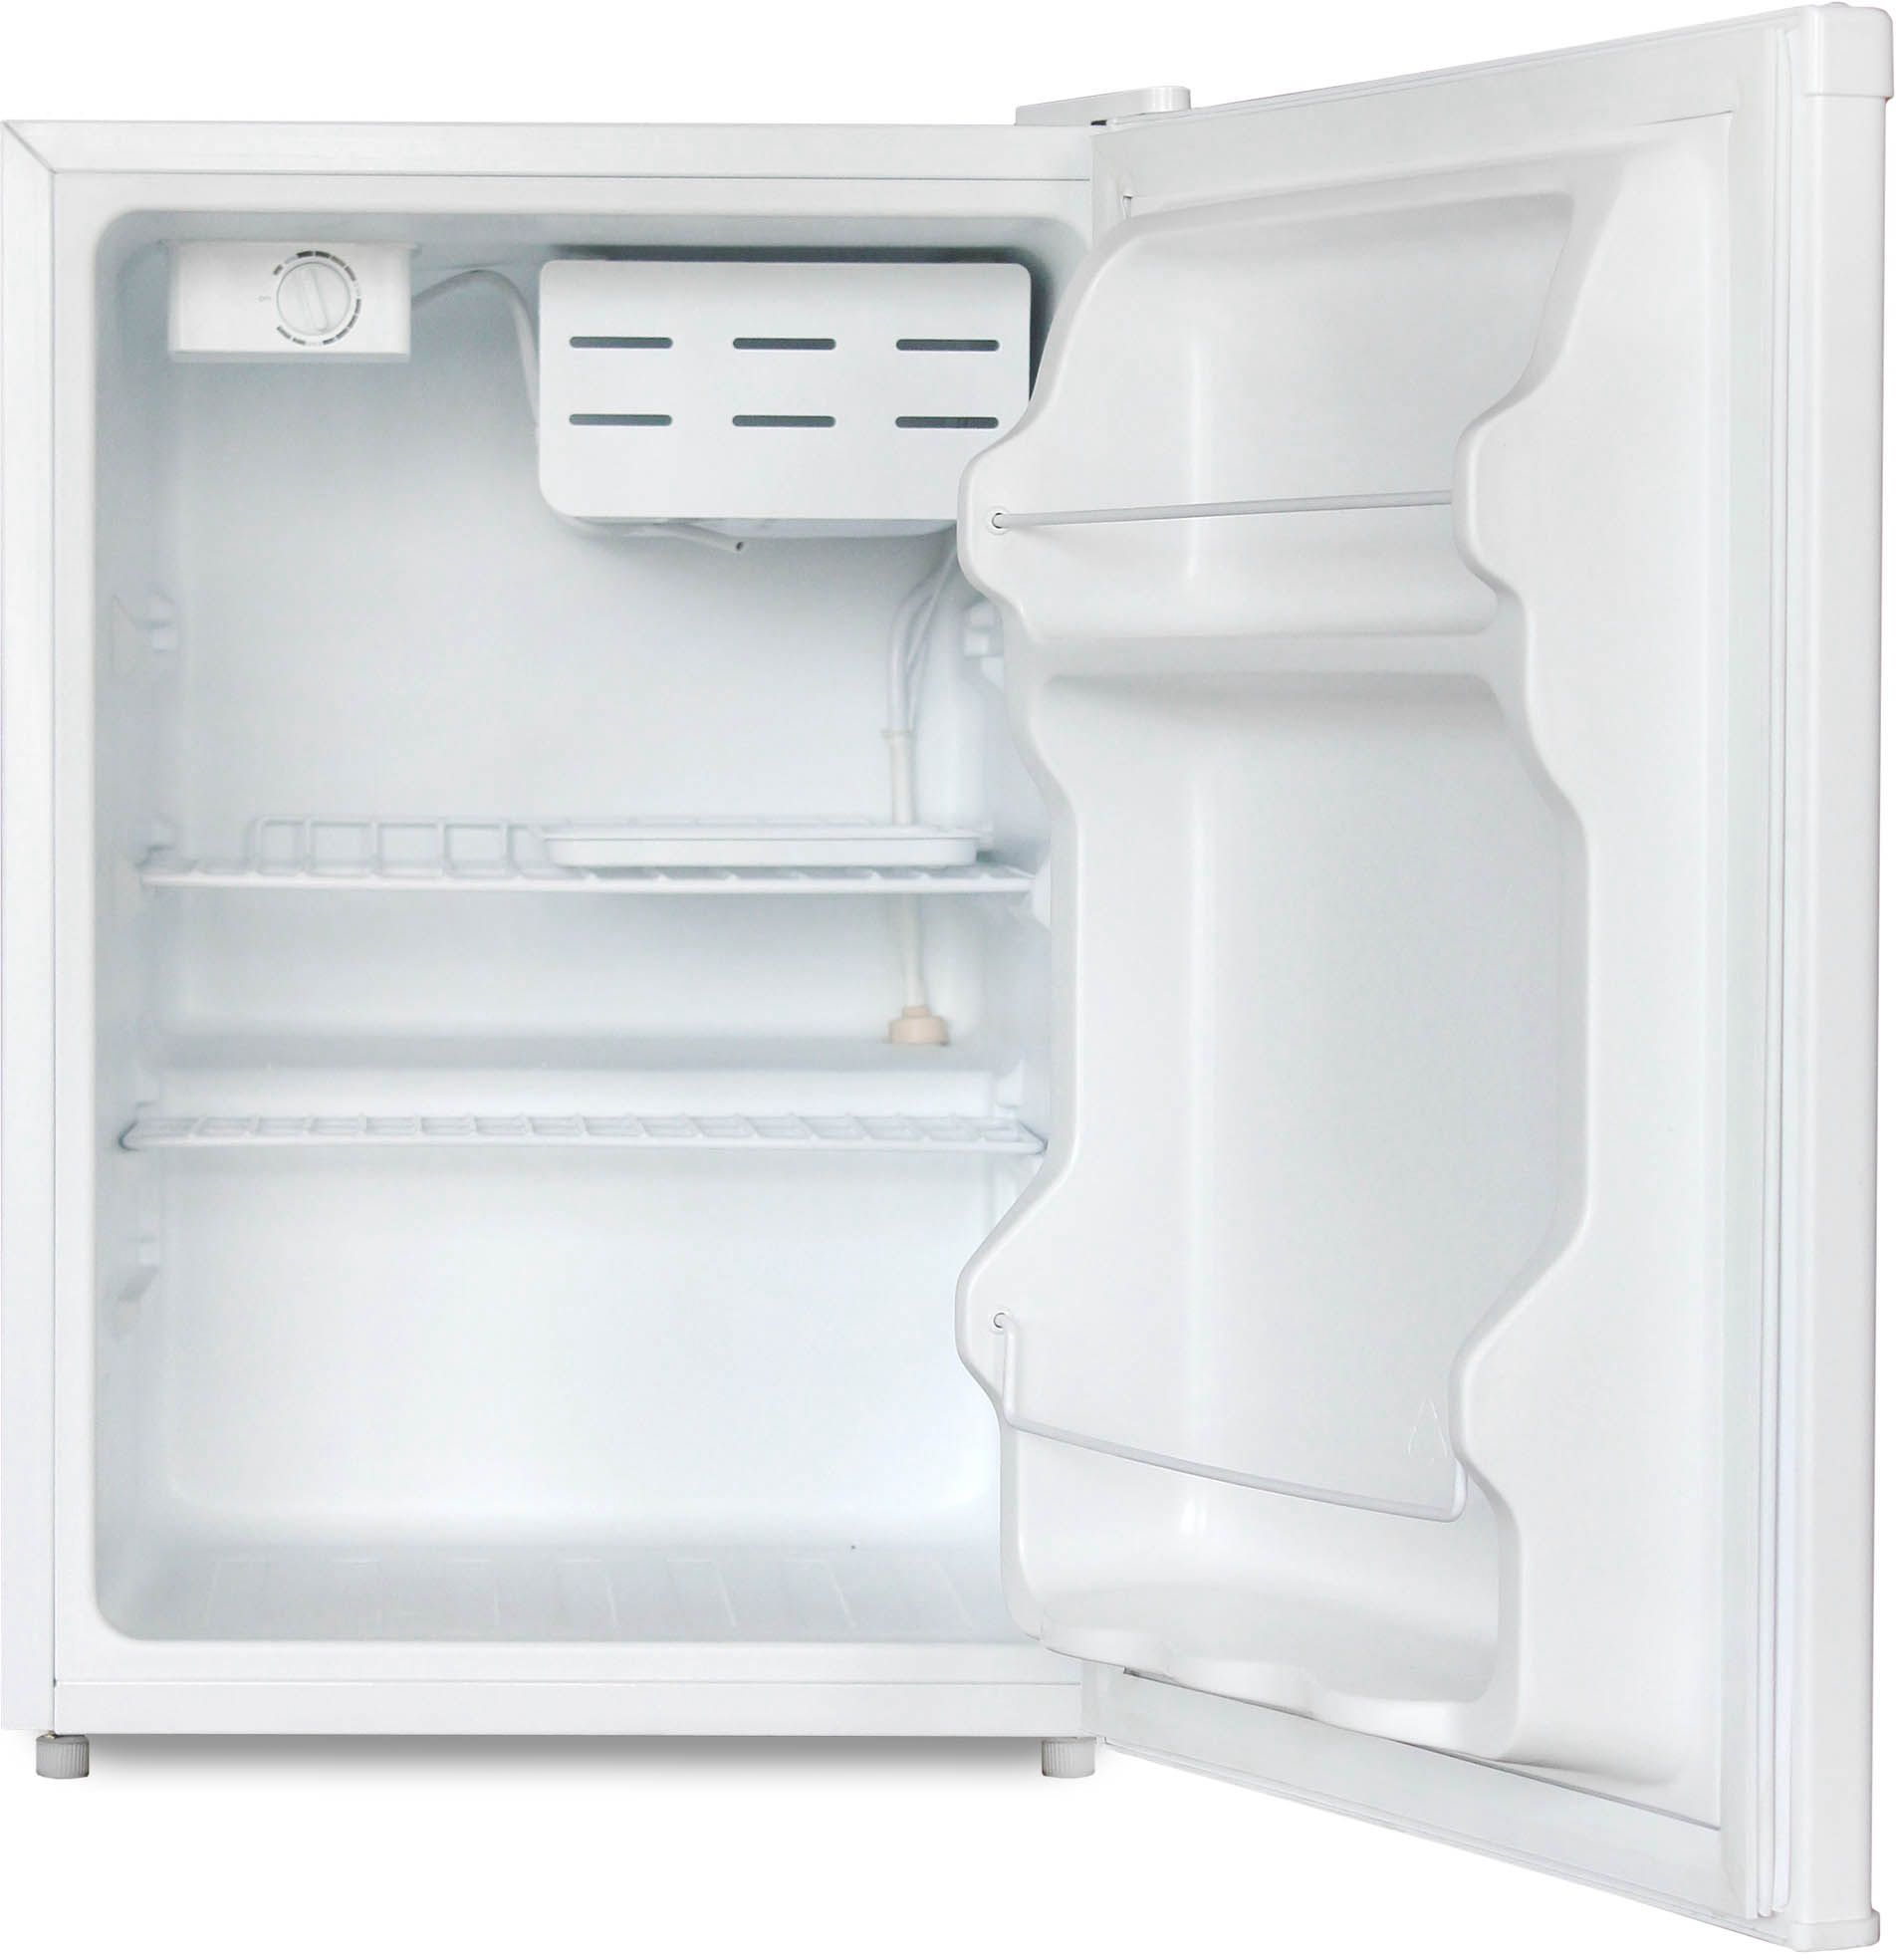 холодильник бирюса 70, купить в Красноярске холодильник бирюса 70,  купить в Красноярске дешево холодильник бирюса 70, купить в Красноярске минимальной цене холодильник бирюса 70